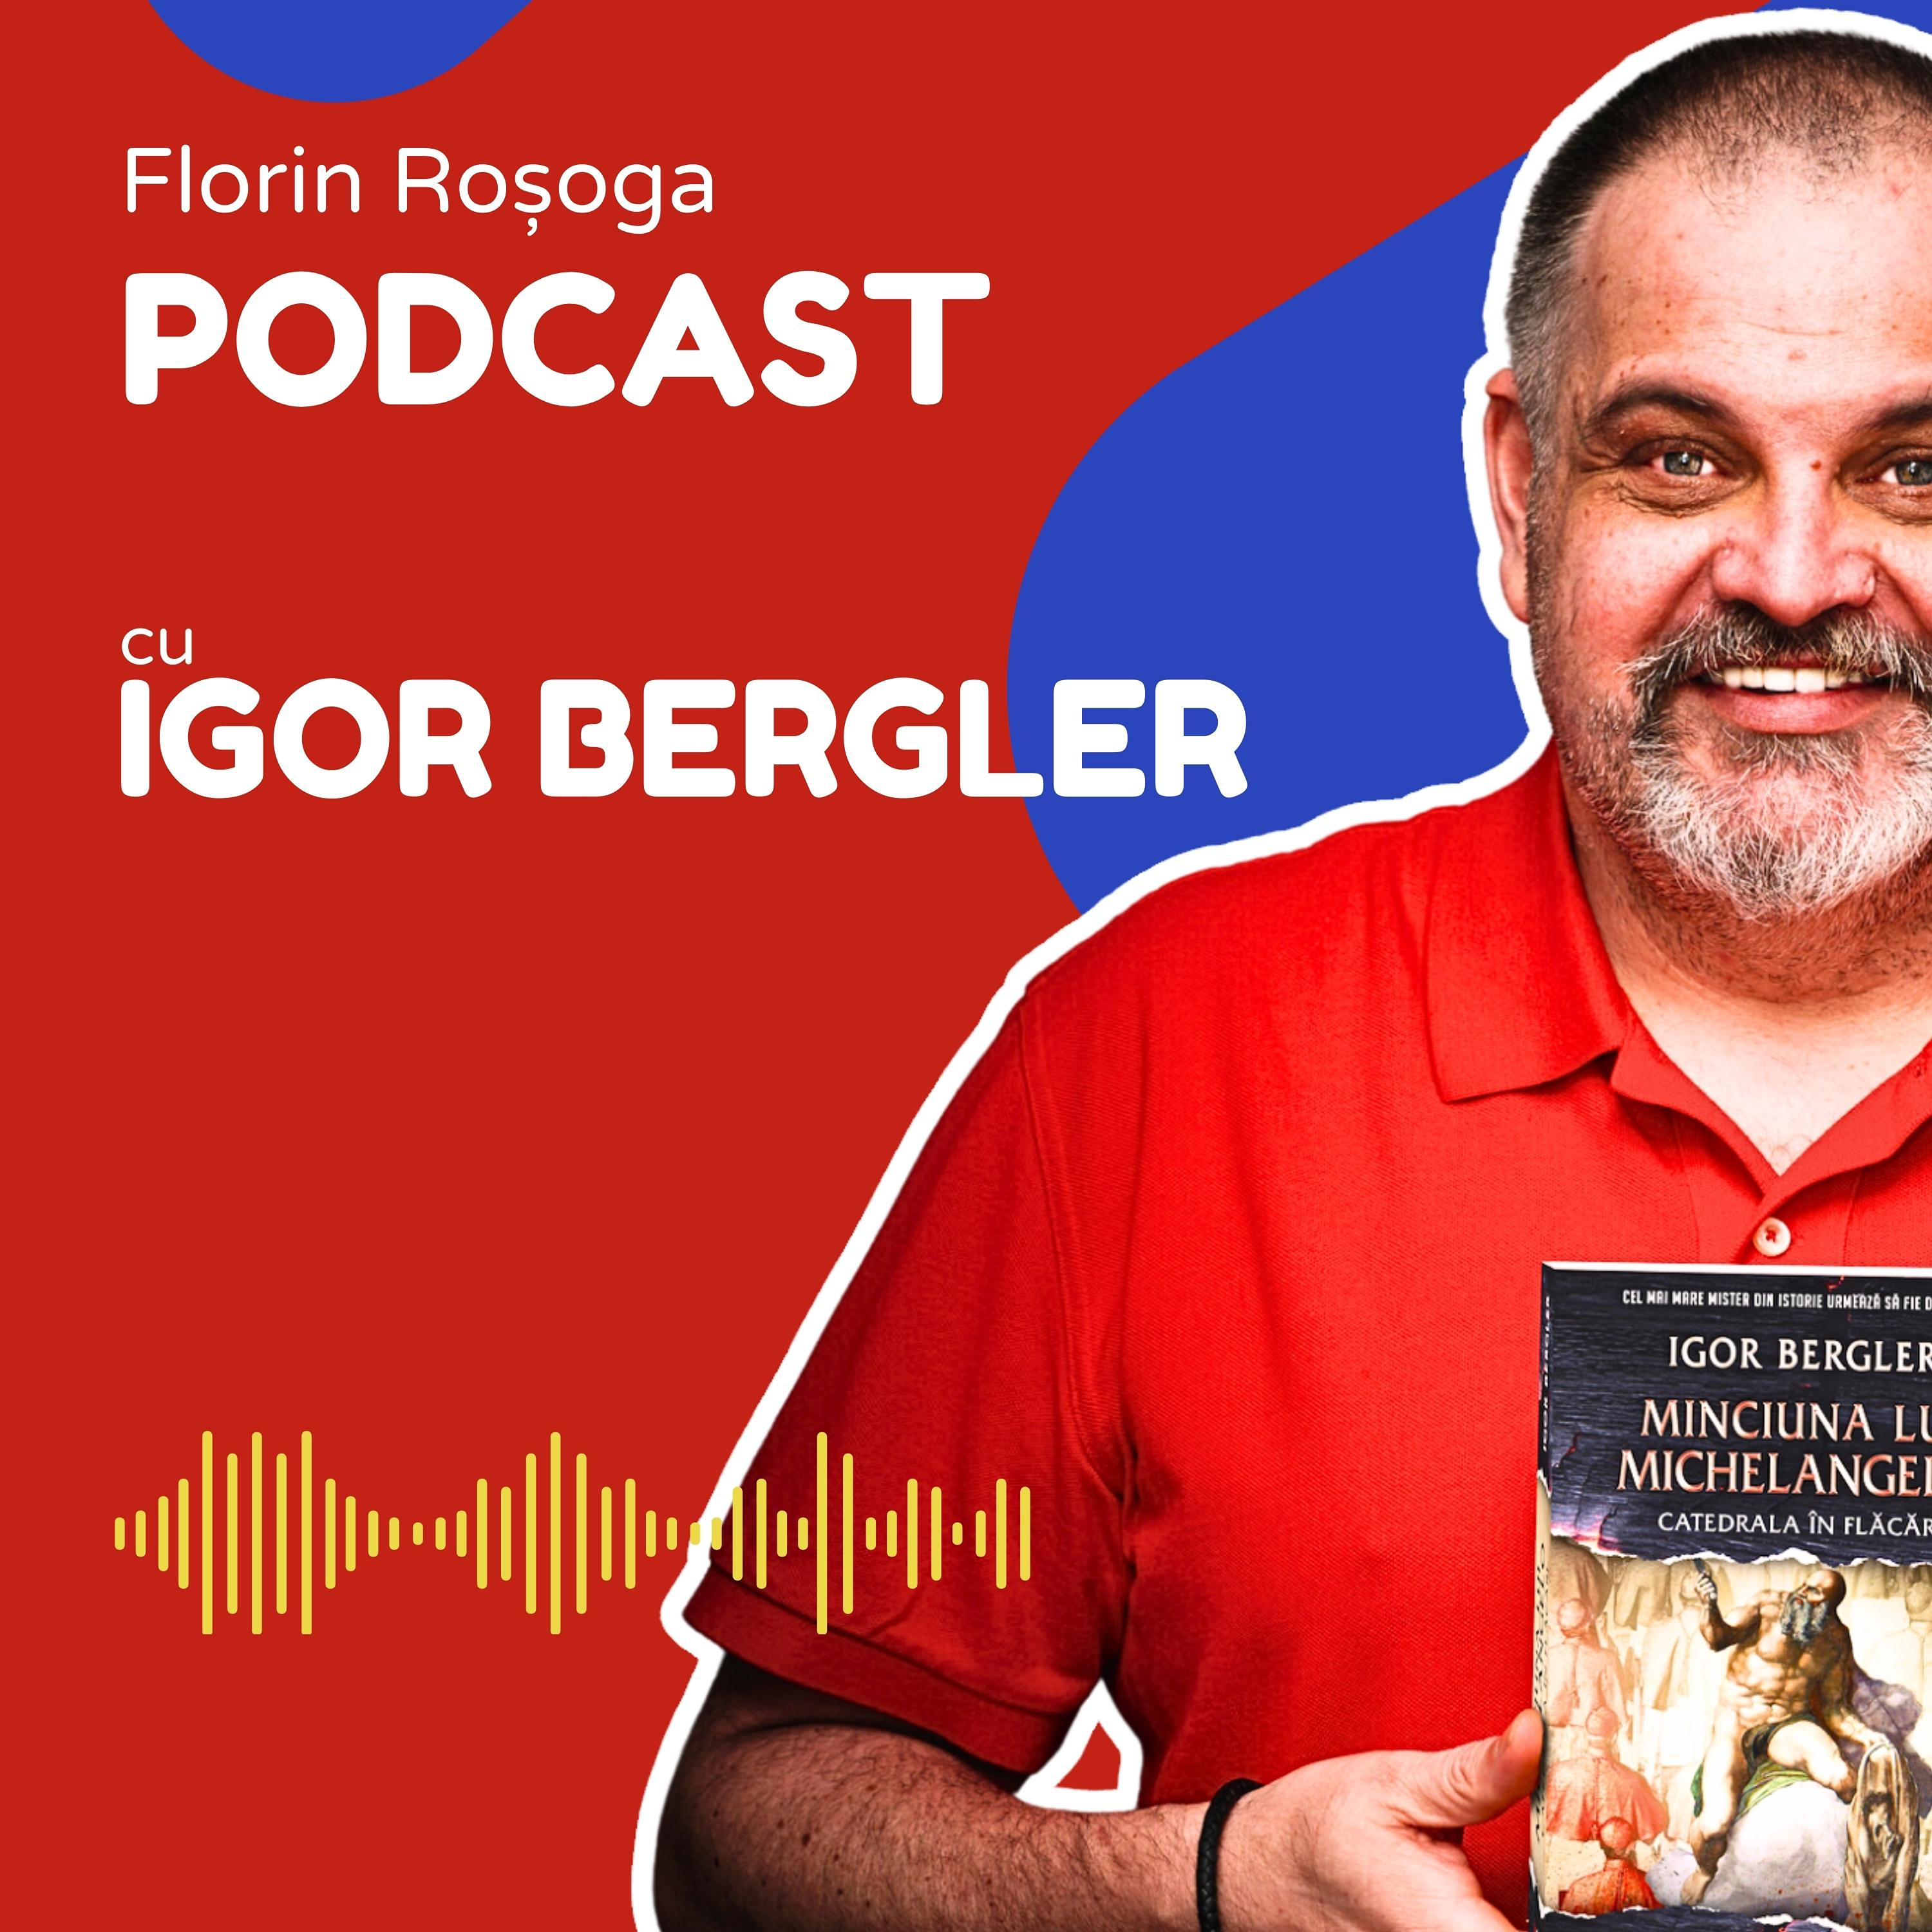 Igor Bergler Despre Noul Său Roman ”Minciuna lui Michelangelo”